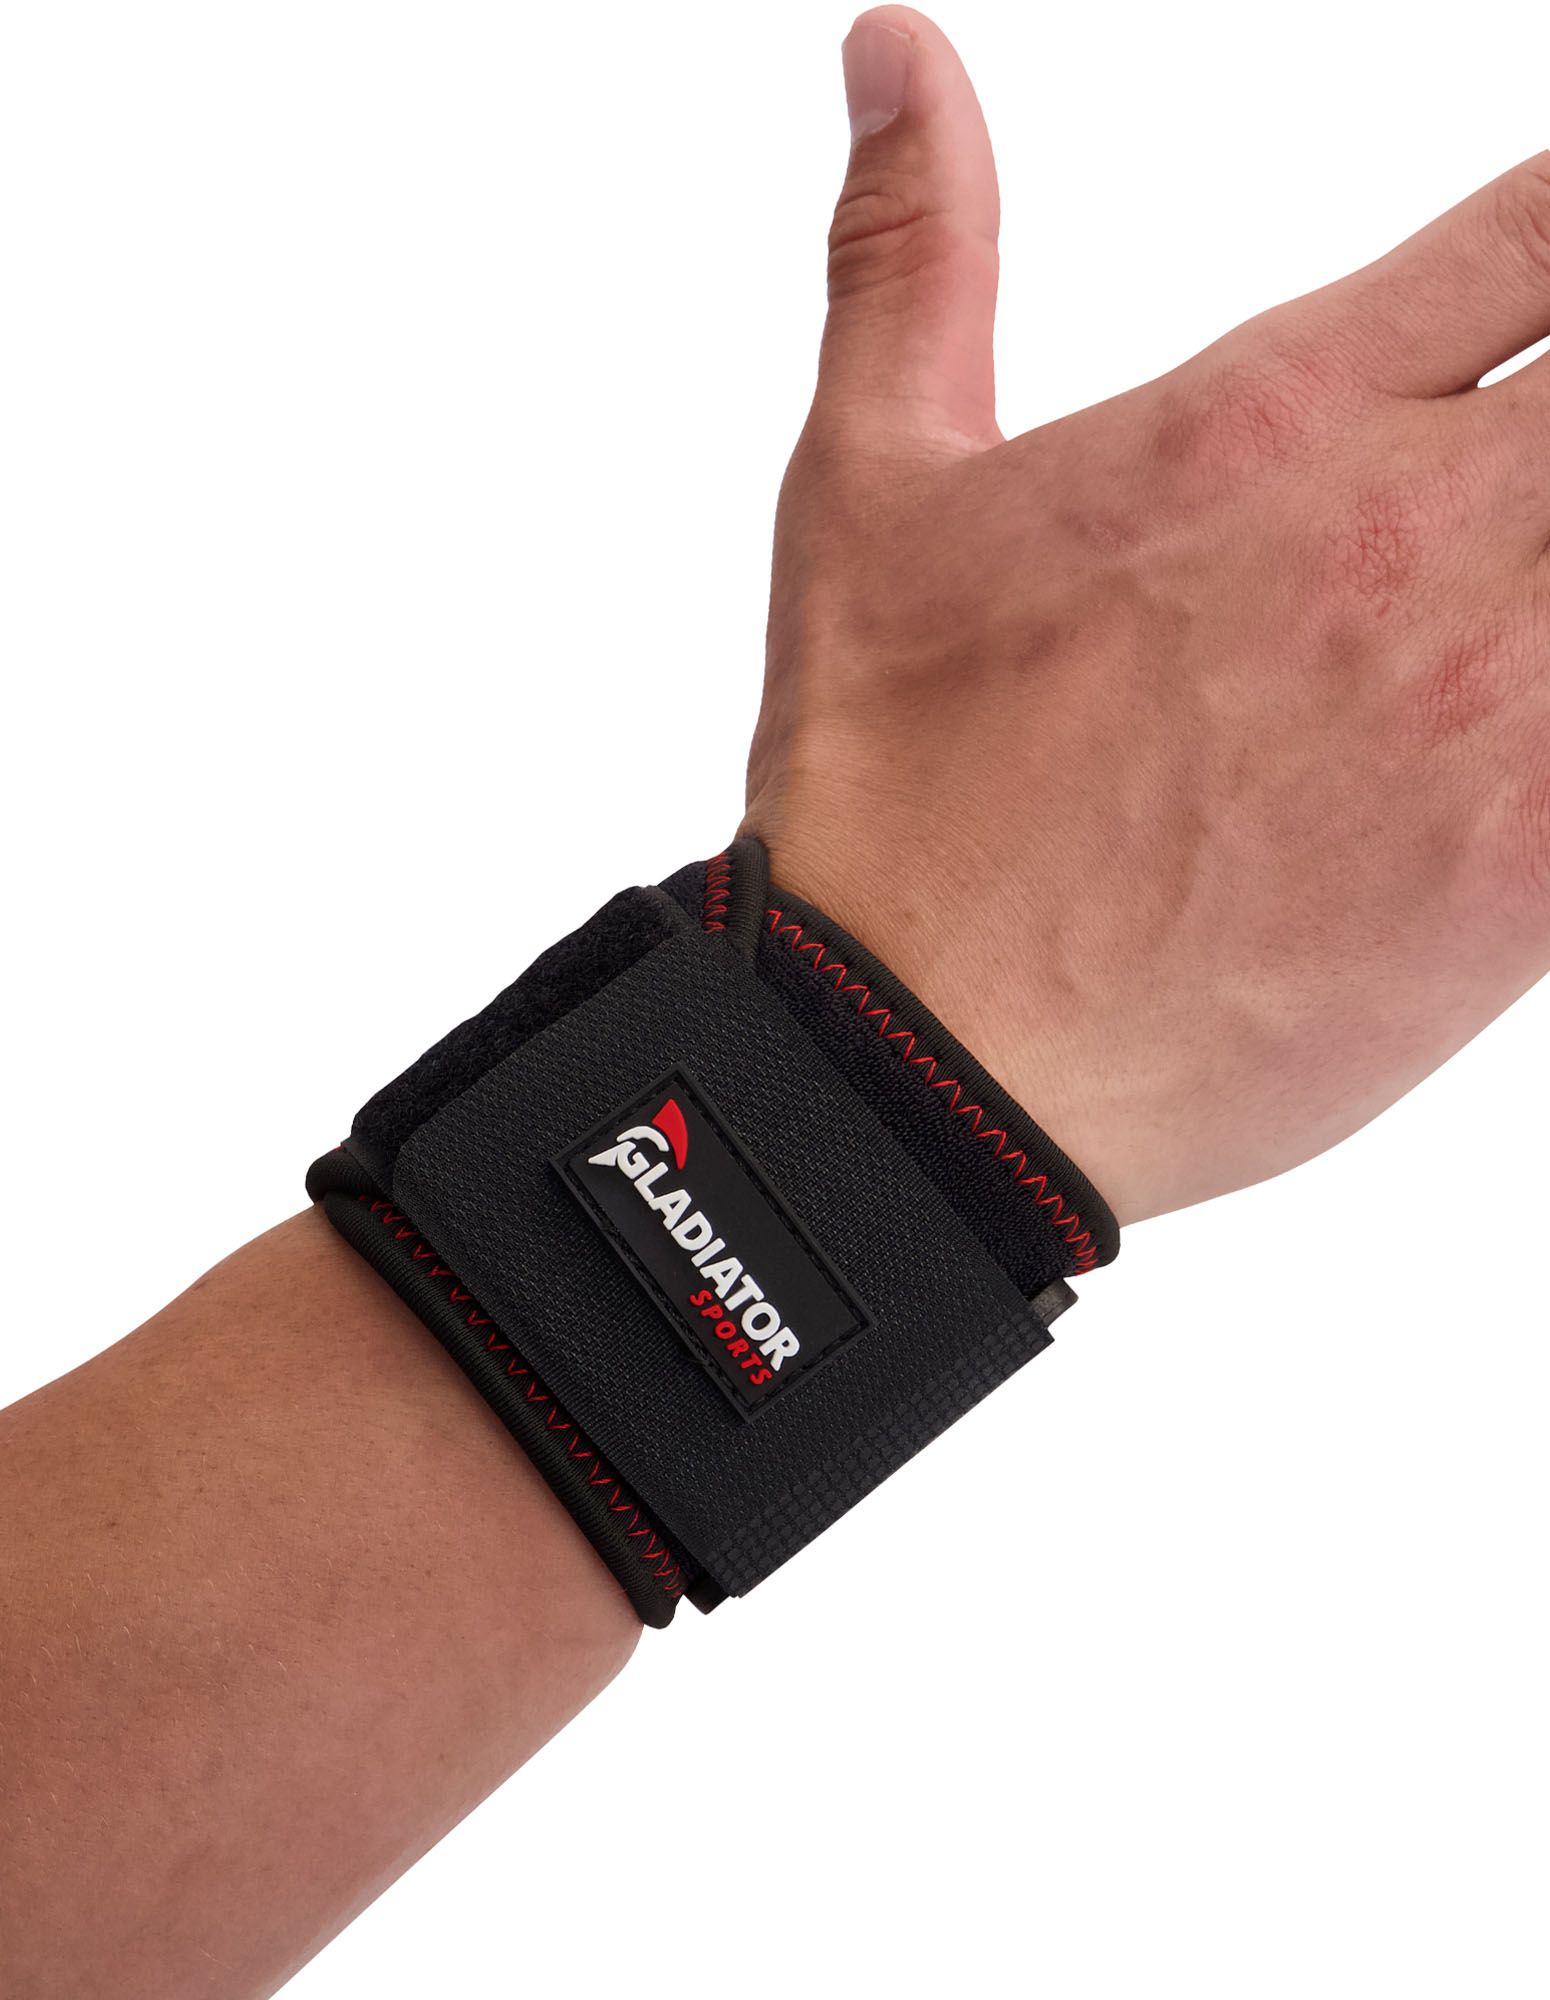 gladiator sports wrist wrap for sale